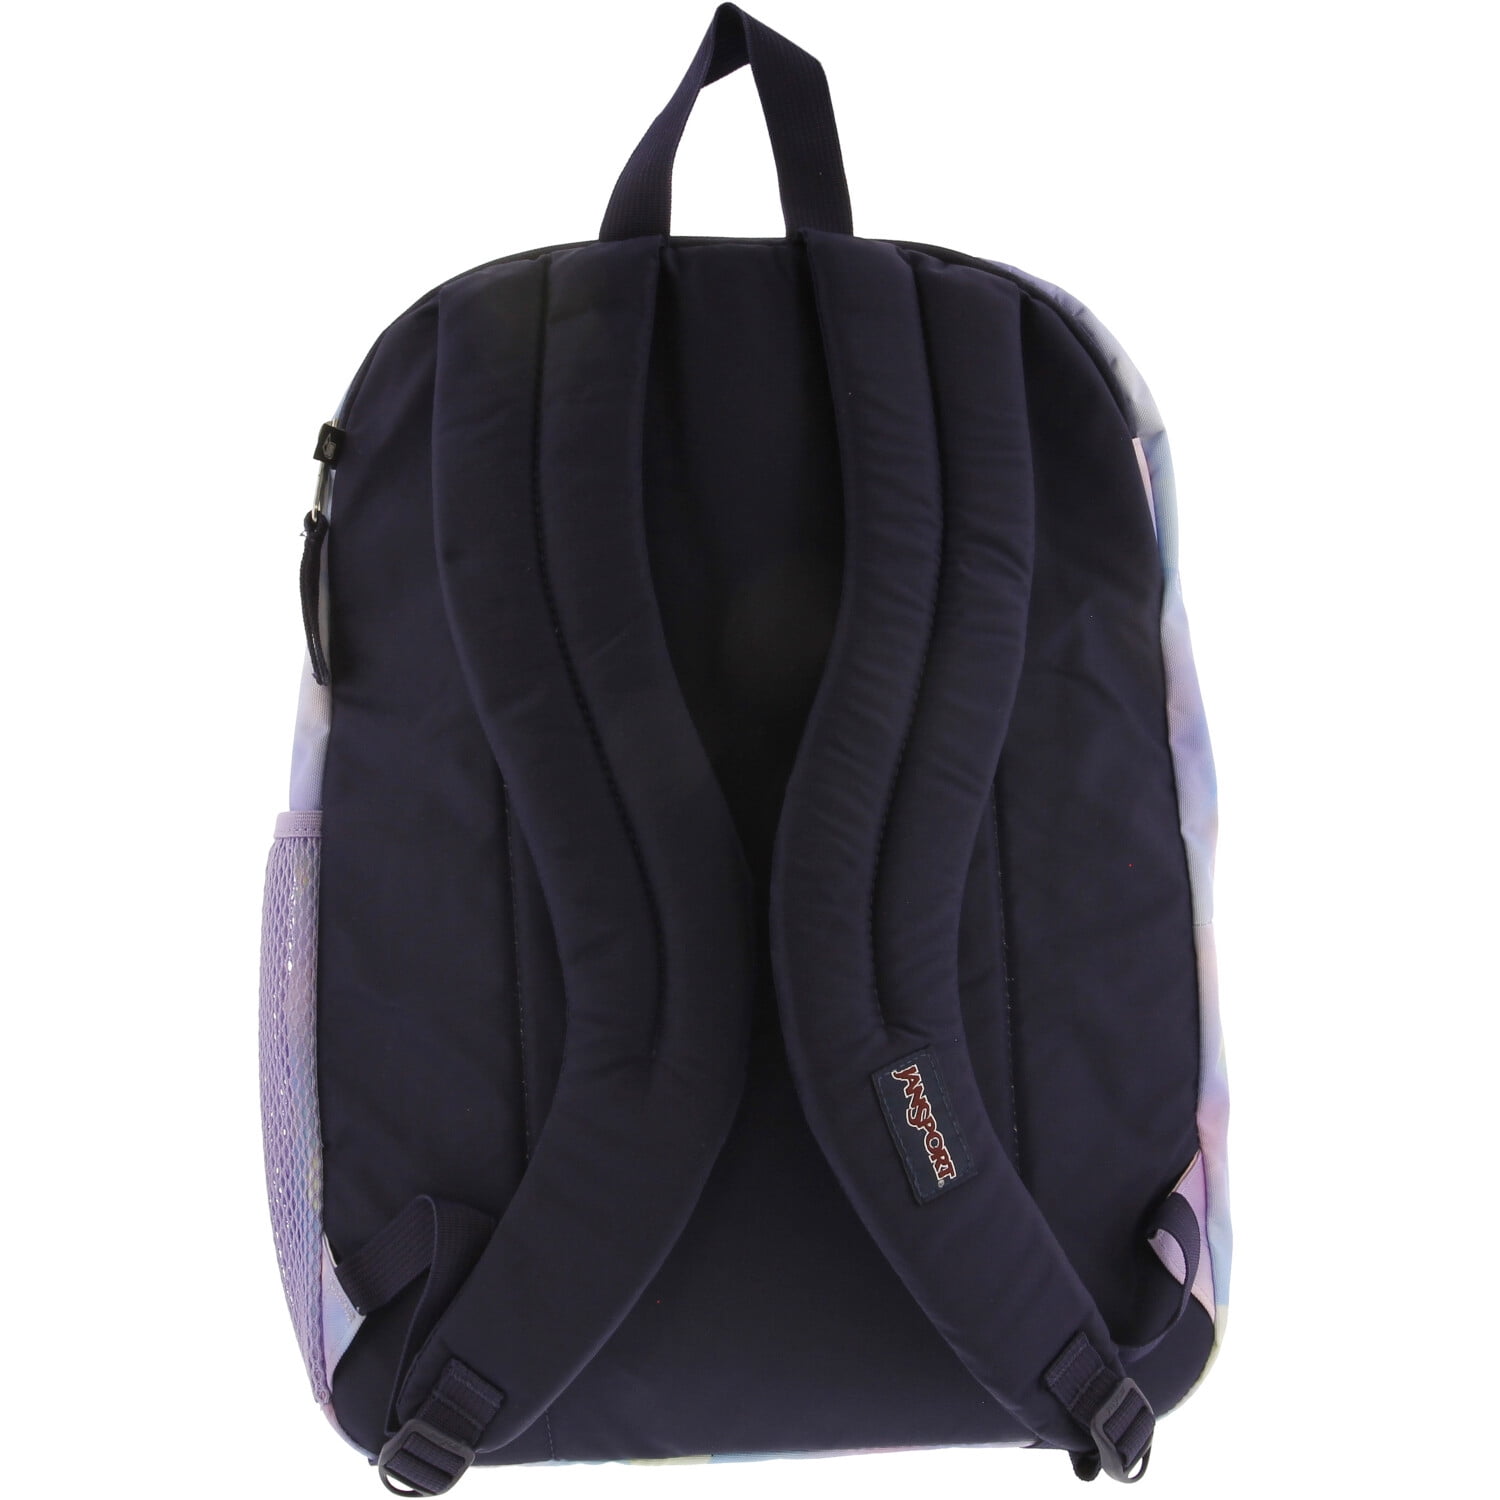 Black Laptop JanSport - 15-inch Big School Student Backpack